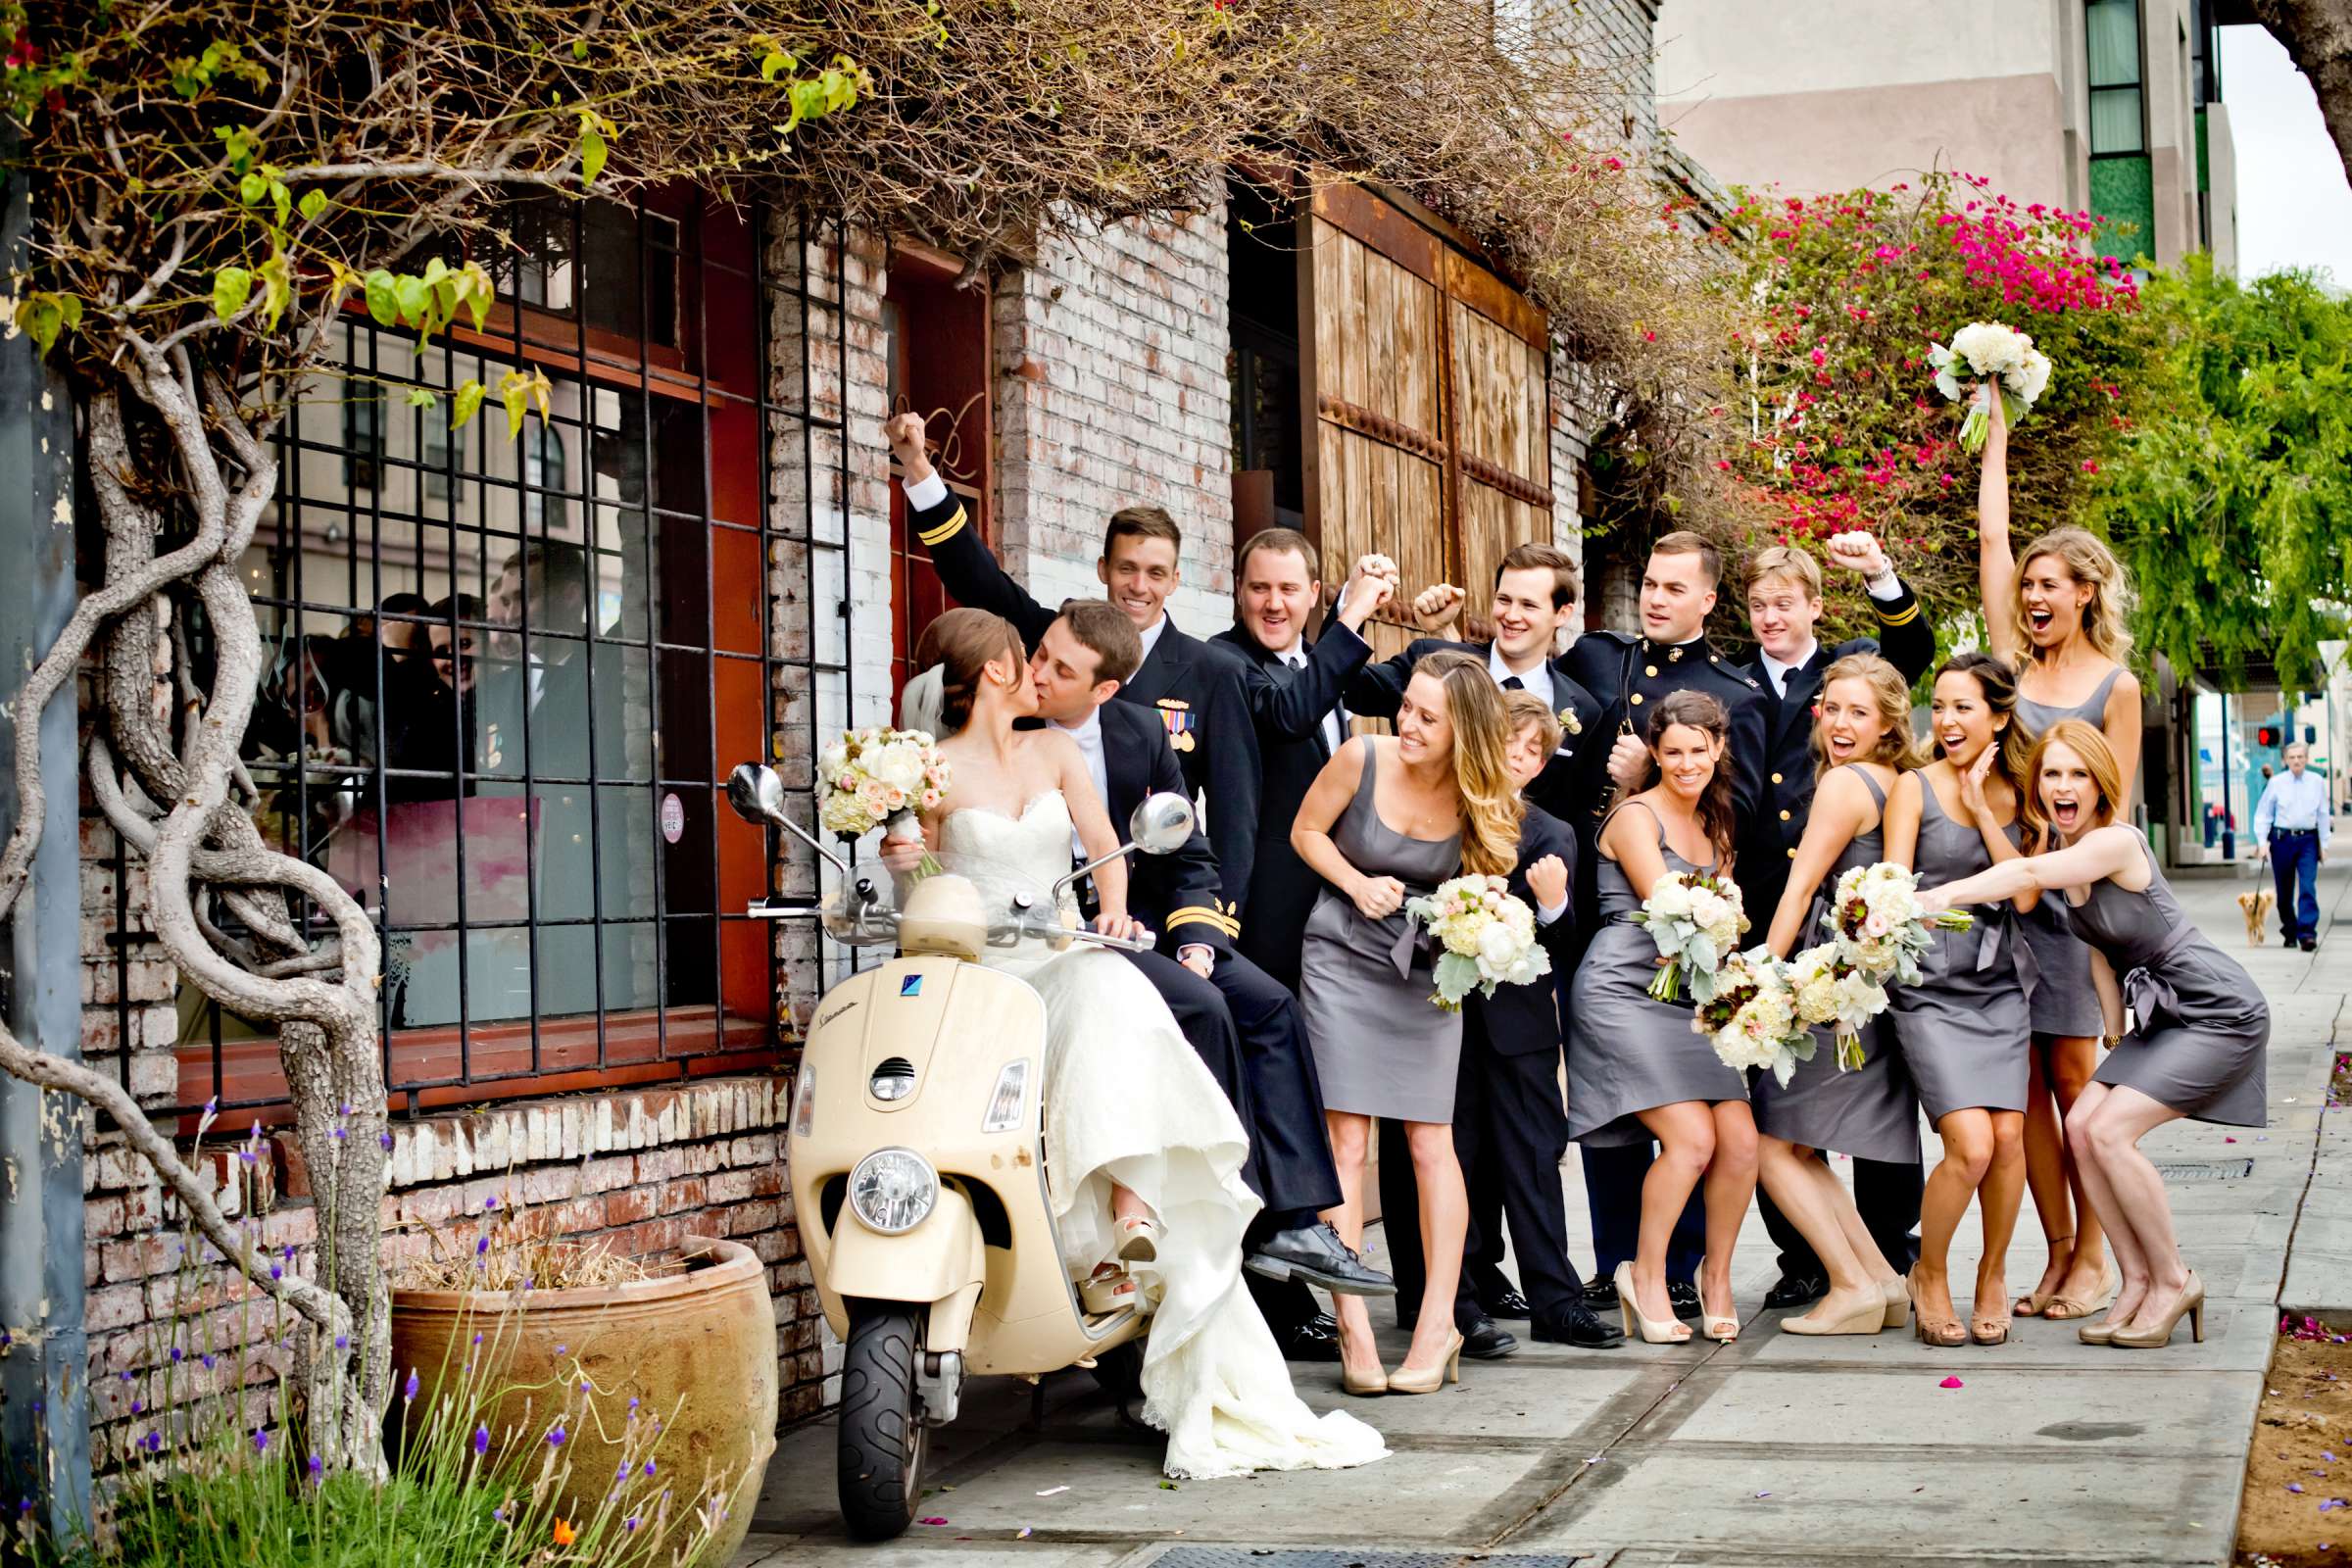 Admiral Kidd Club Wedding coordinated by I Do Weddings, Ashley and Rhett Wedding Photo #358405 by True Photography